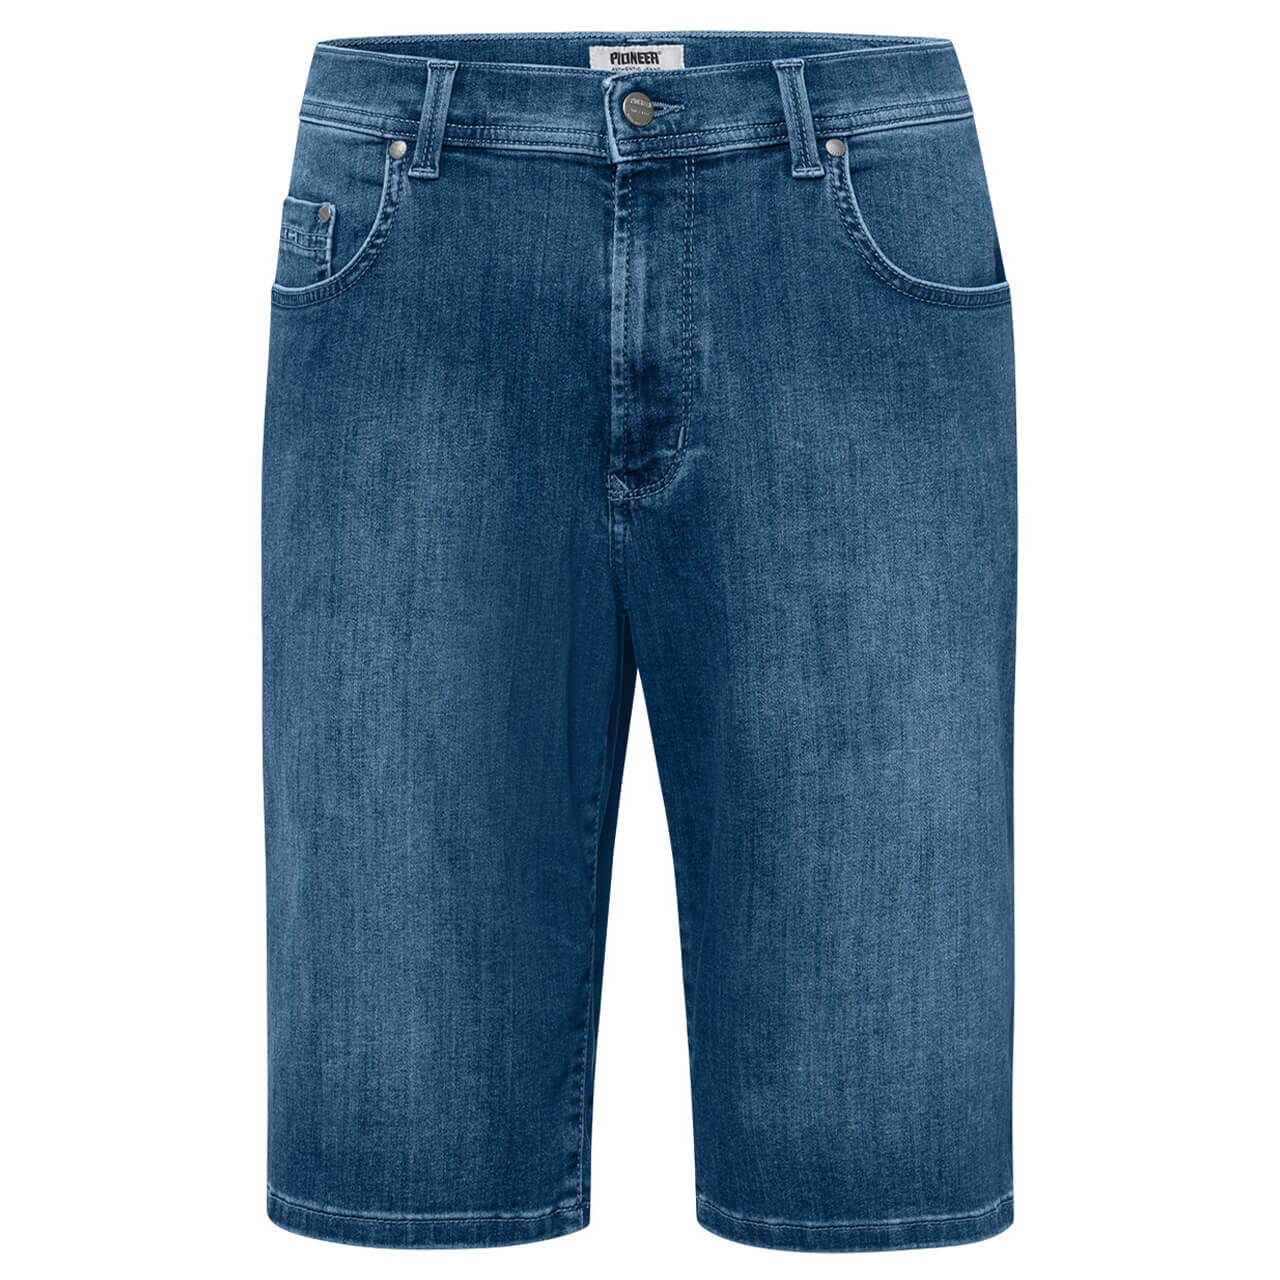 Pioneer Jeans Finn Megaflex Bermuda für Herren in Blau angewaschen, FarbNr.: 6832